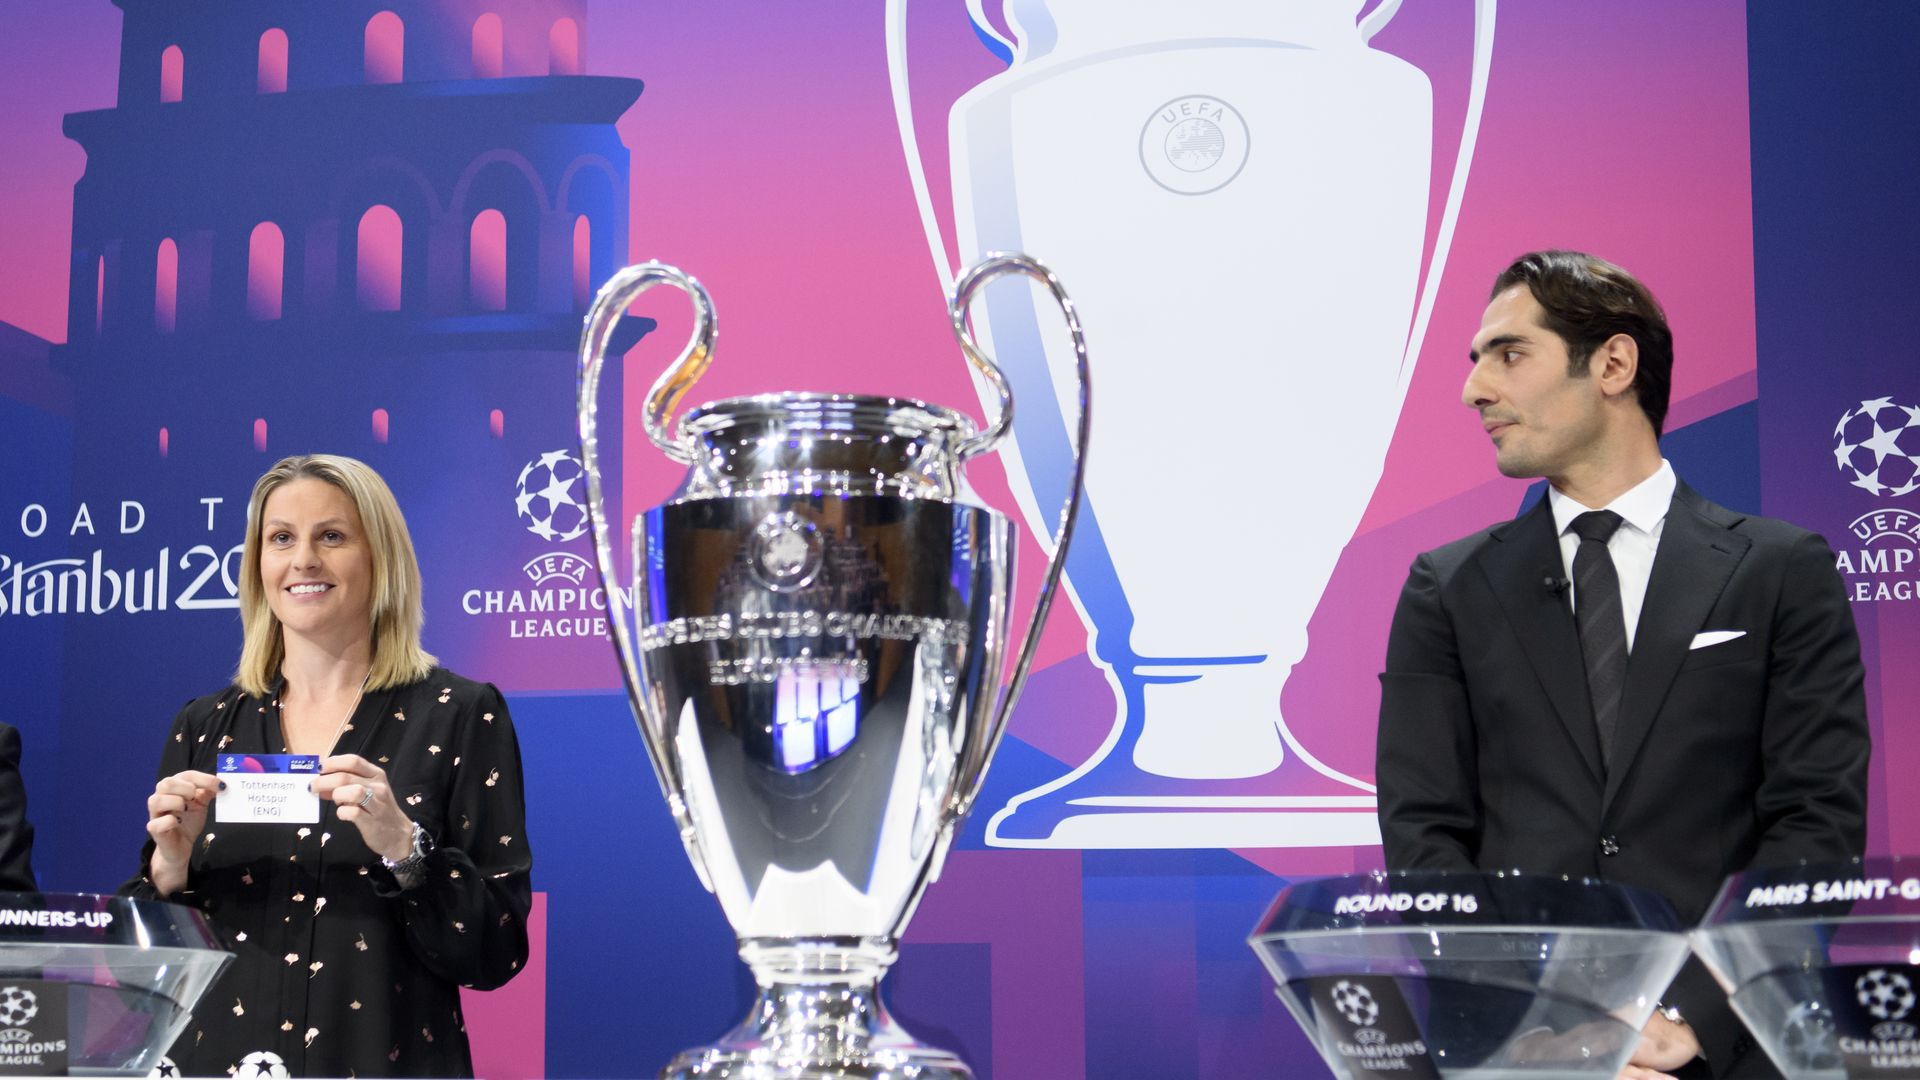 Ligue des champions (UEFA) : Lundi prochain, tirage des huitièmes